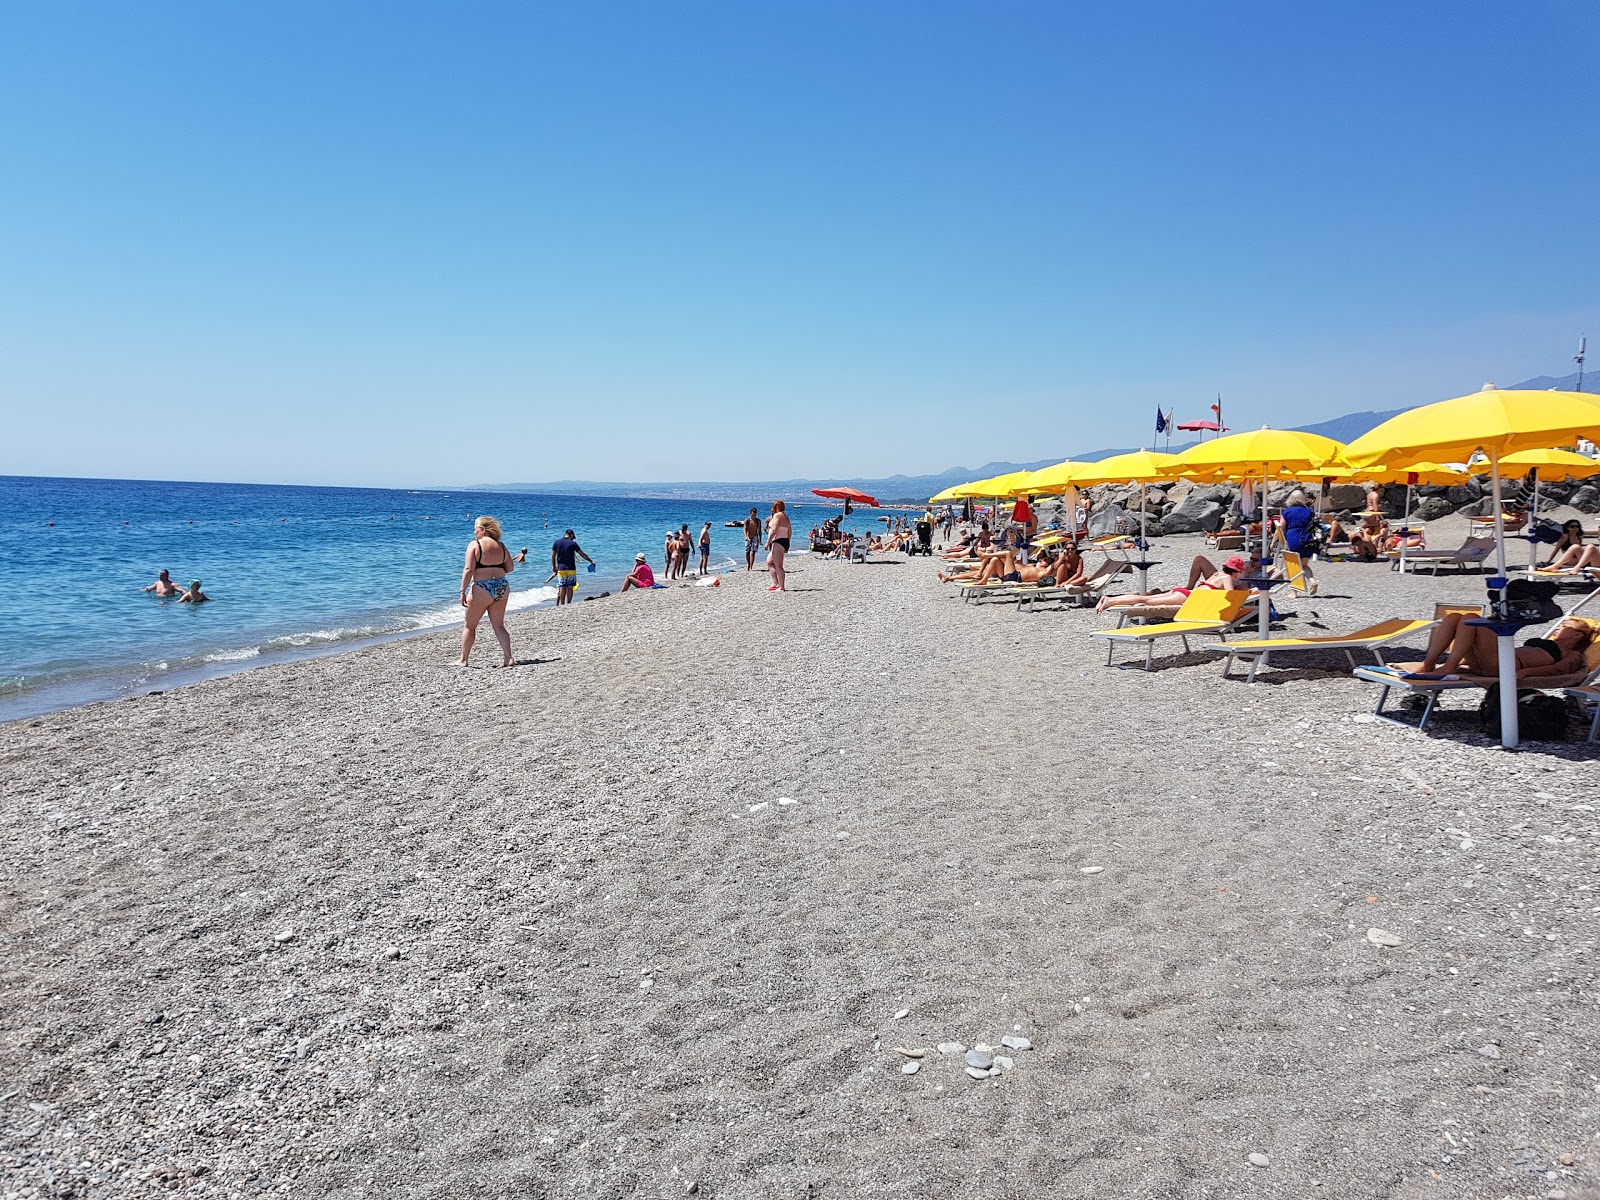 Zdjęcie Recanati beach II - popularne miejsce wśród znawców relaksu